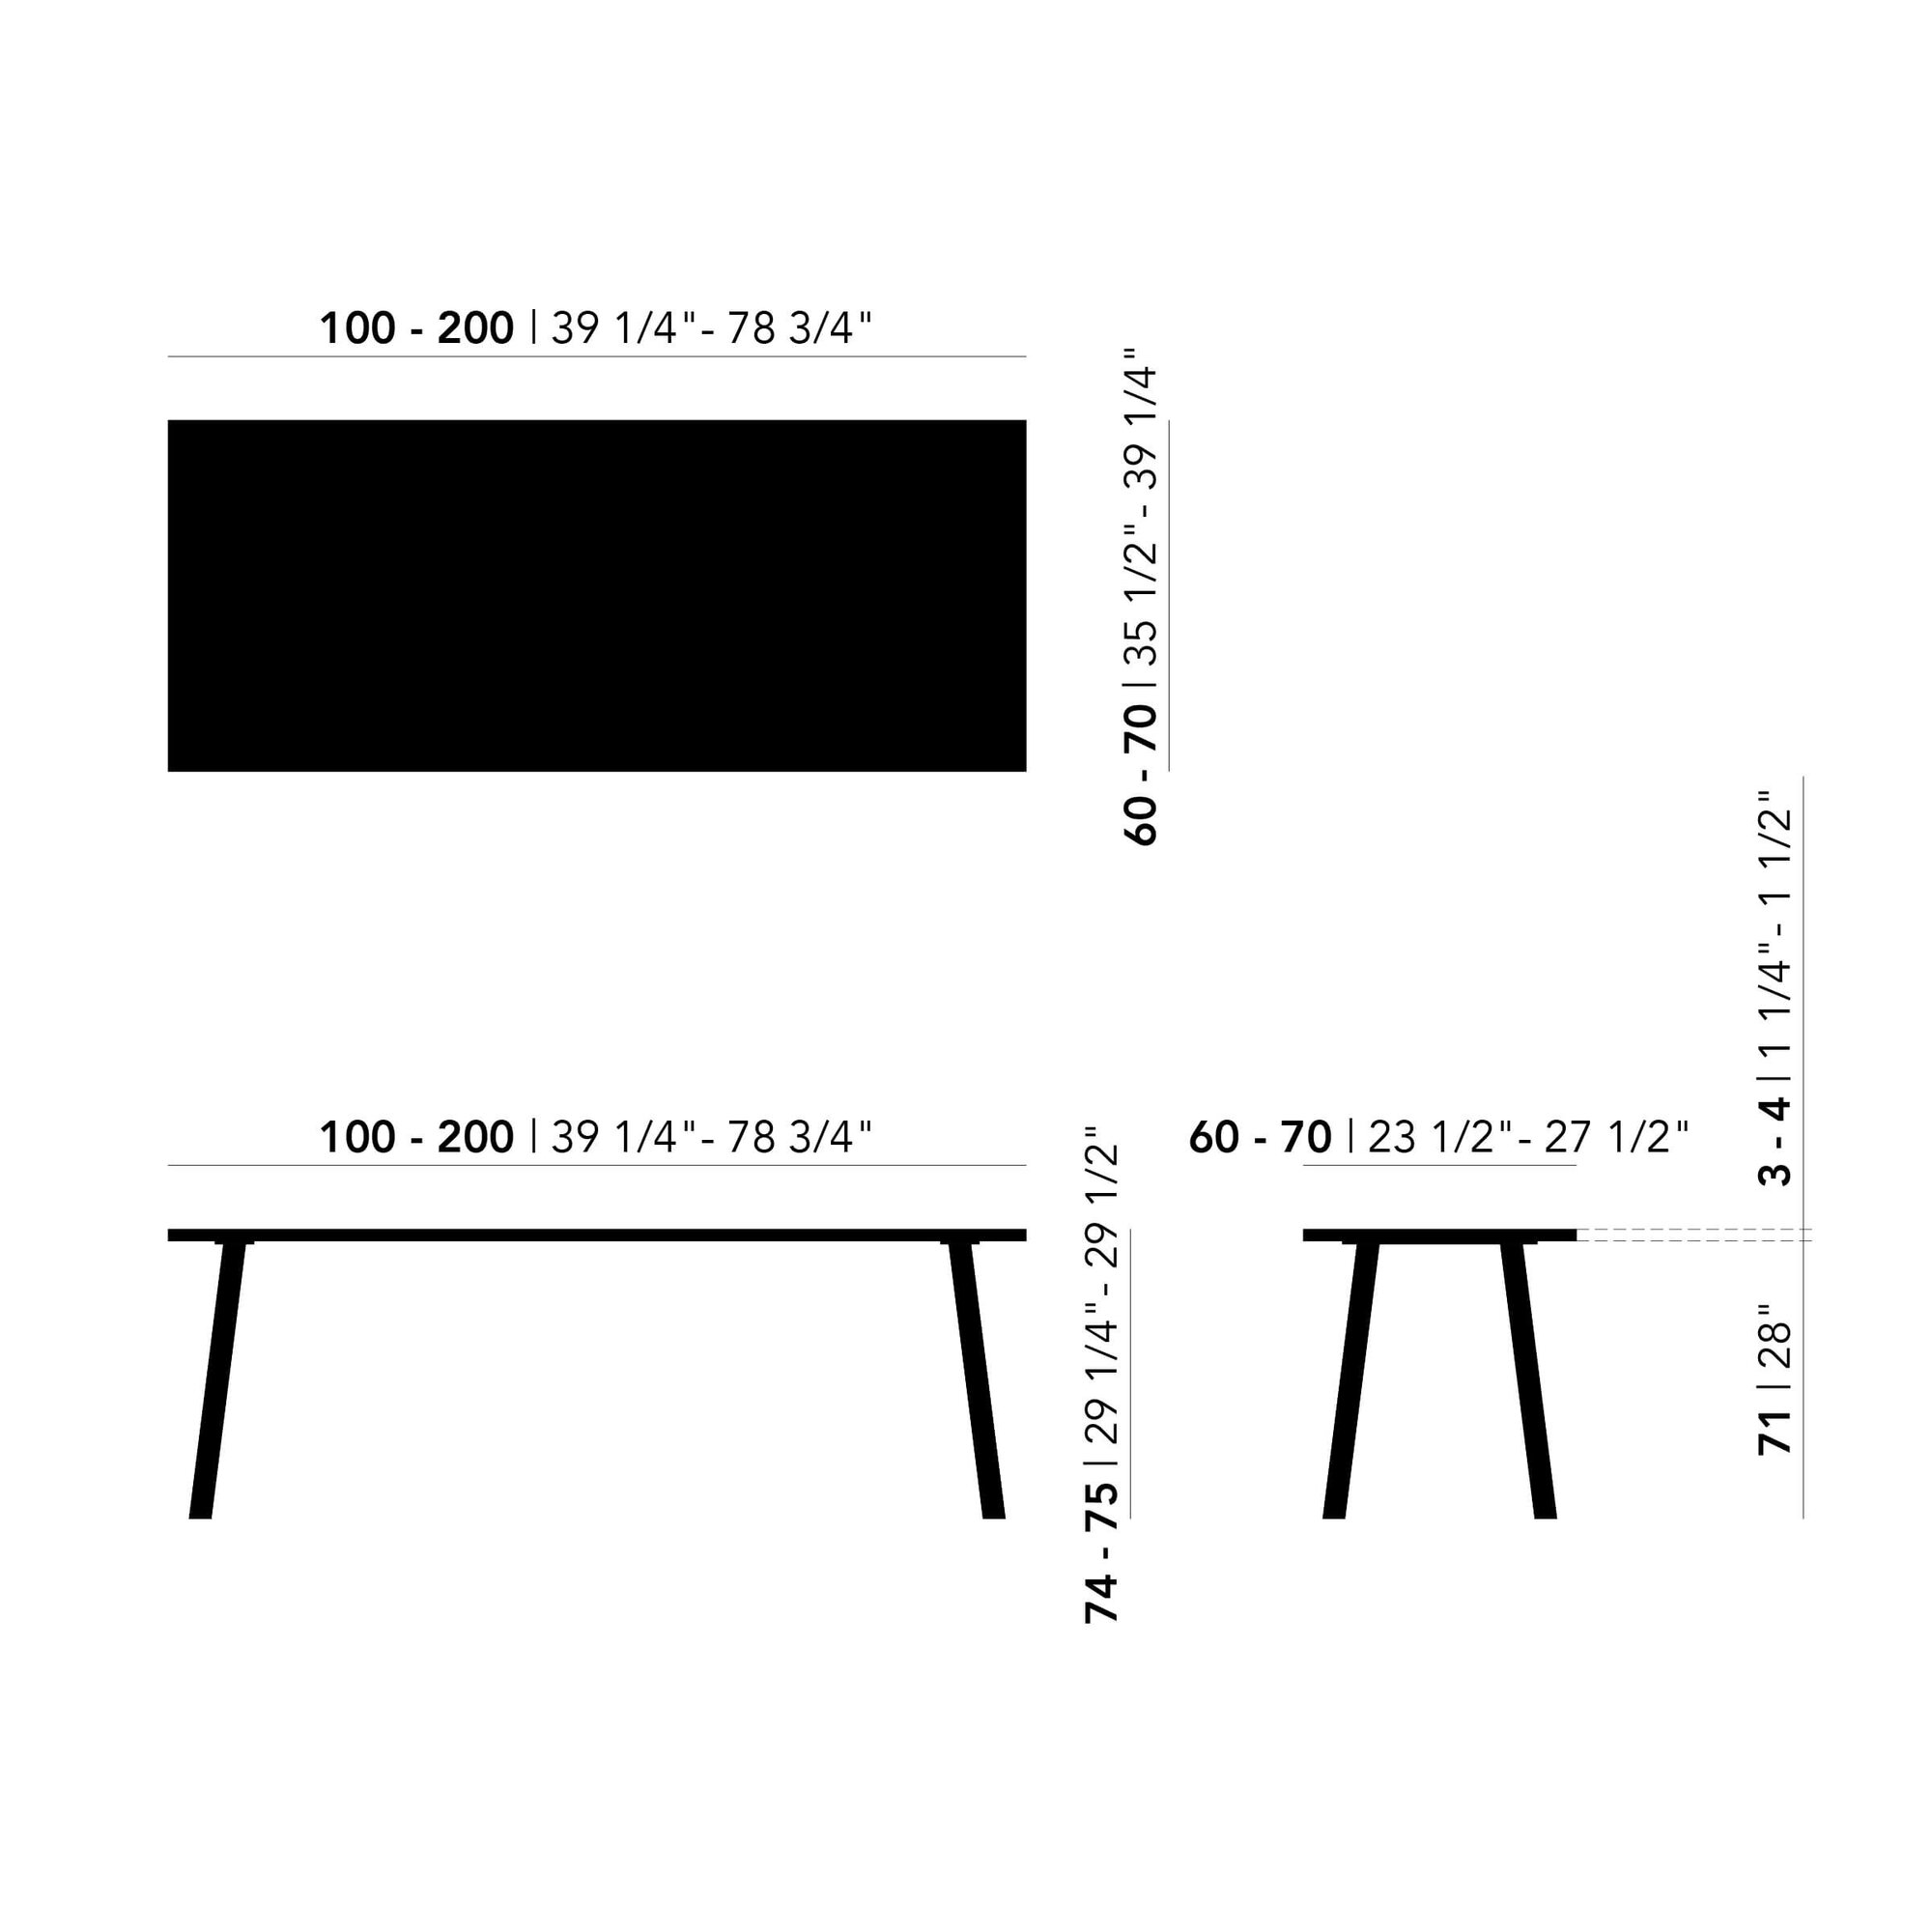 Rectangular Design dining table | New Classic Home Desk Steel white powdercoating | Oak hardwax oil natural light | Studio HENK| 